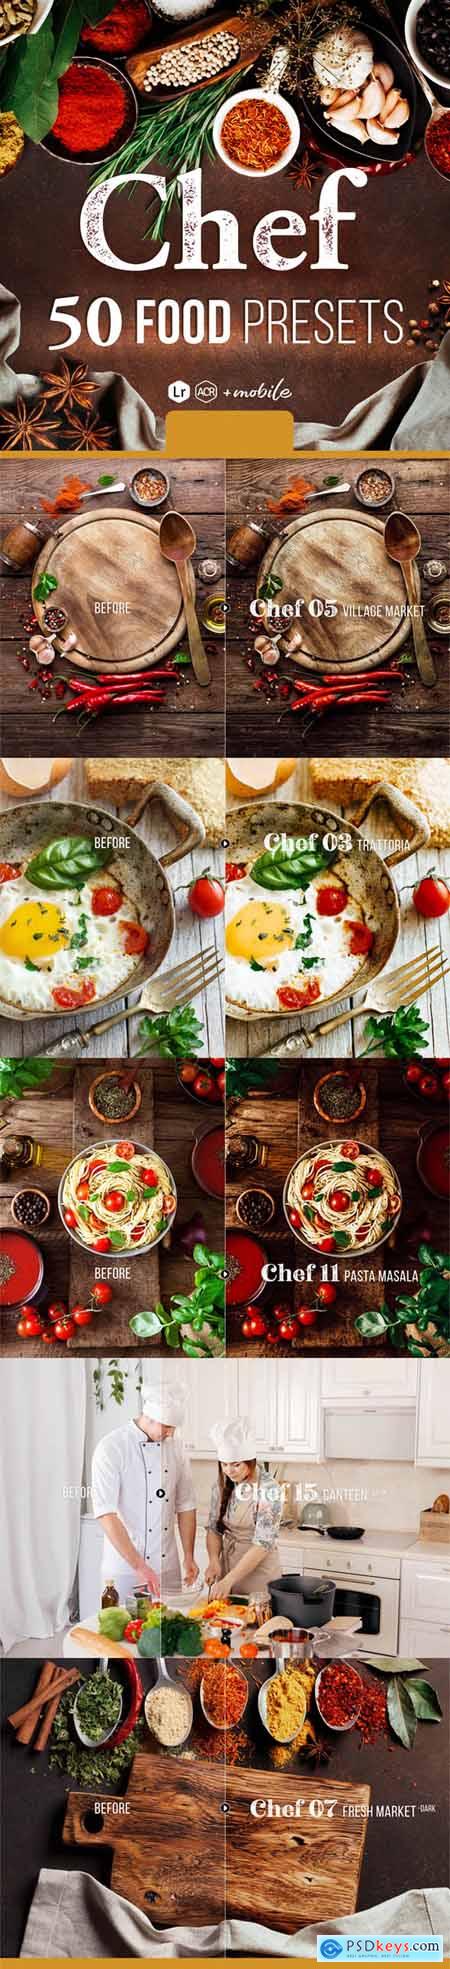 Chef - 50 Food Presets for Lightroom & Photoshop 25551048